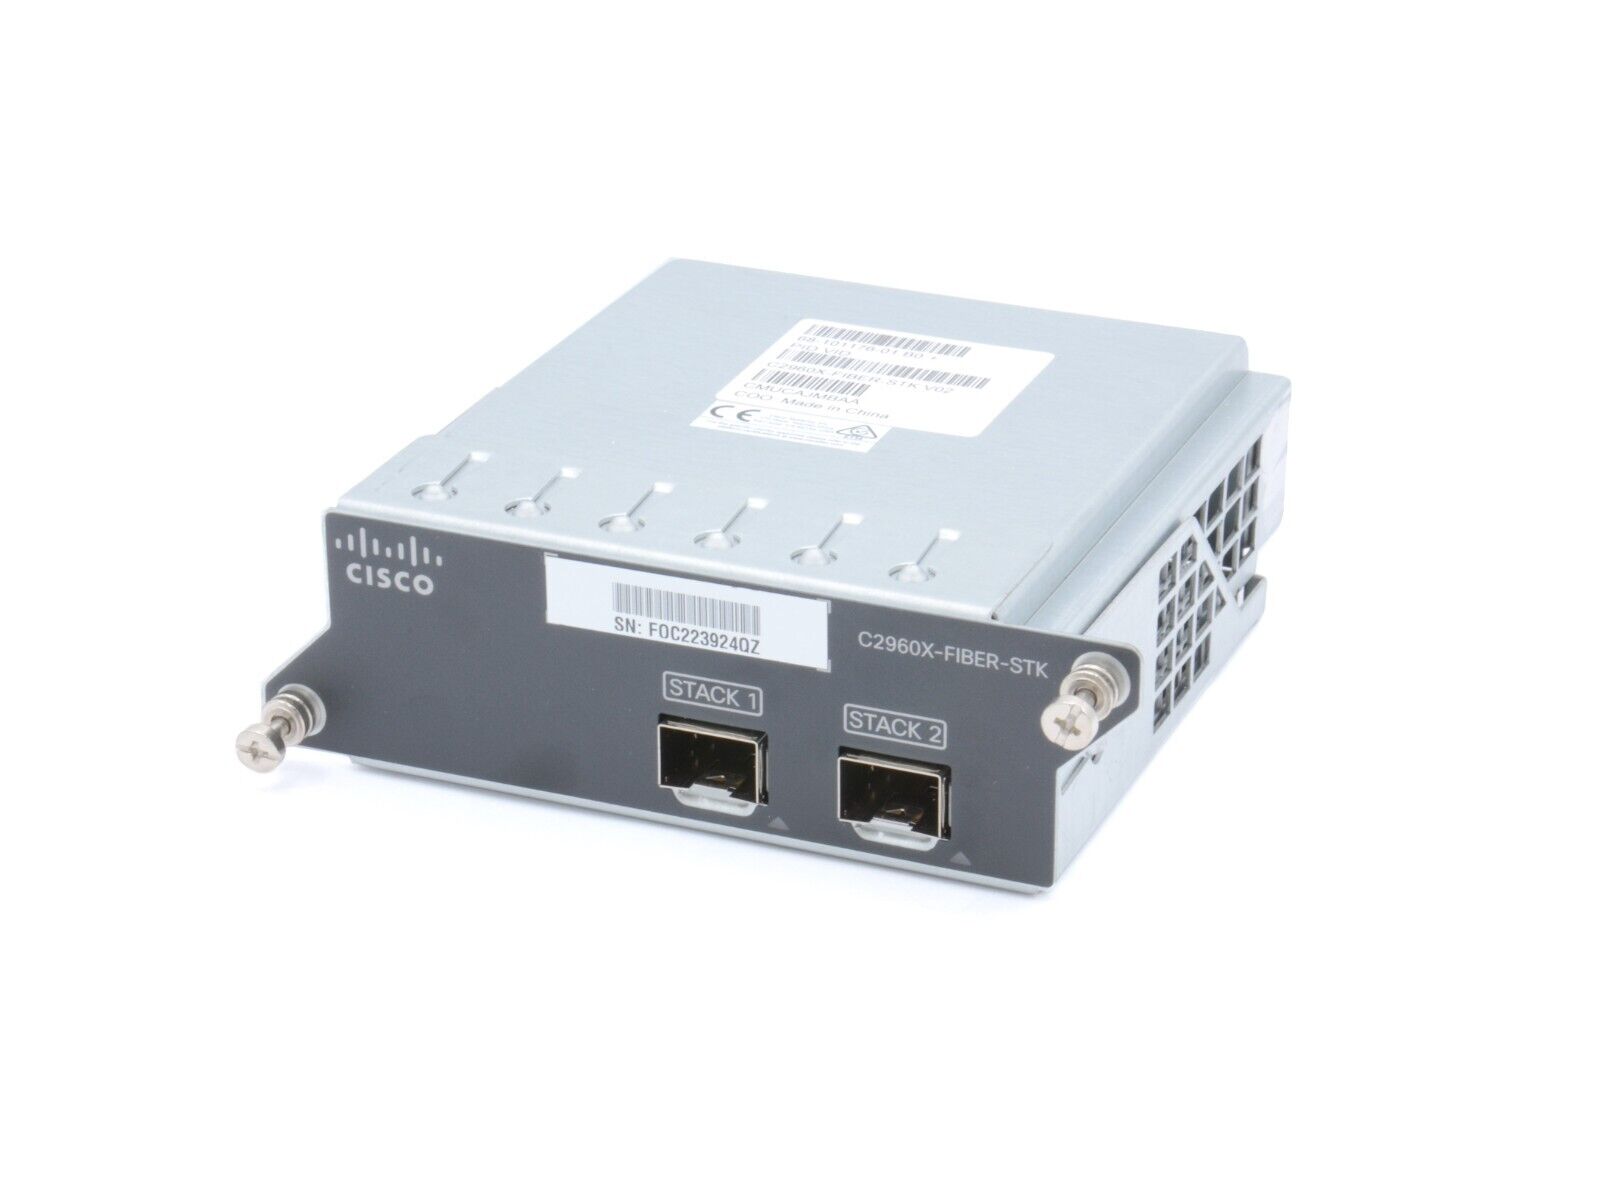 Cisco C2960X-FIBER-STK V02 Dual-port 10G SFP+ FlexStack Stacking Module 10GE